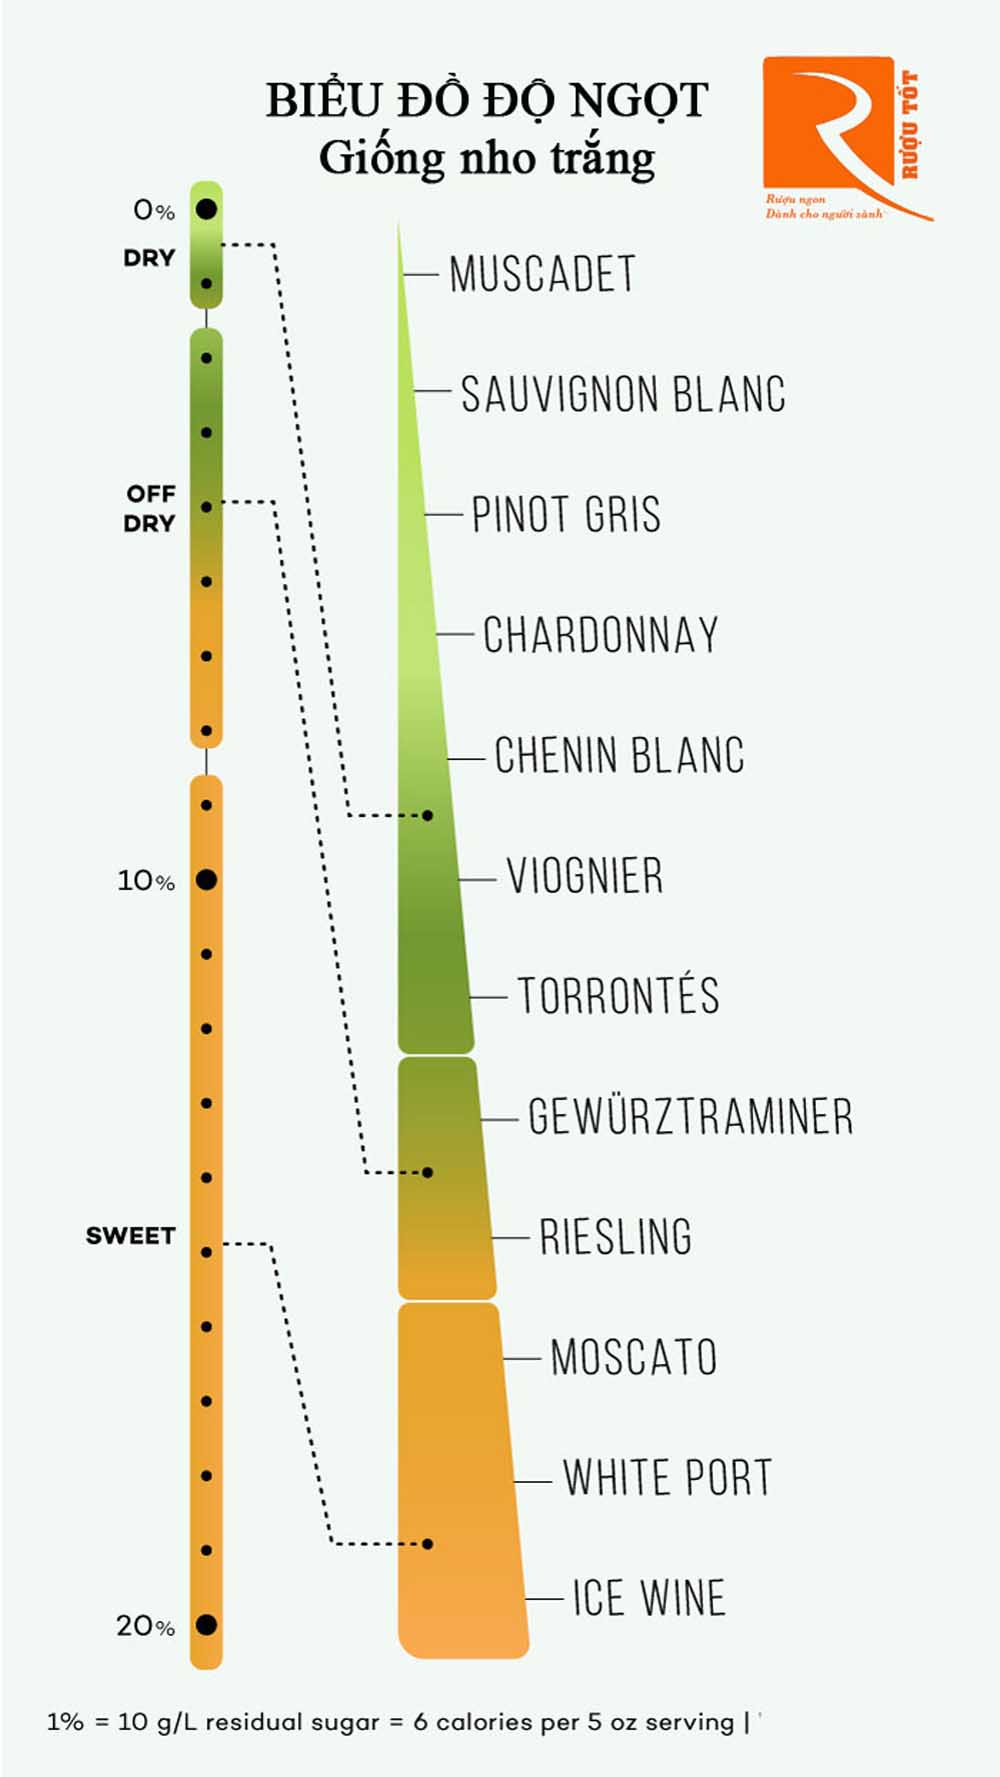 Biểu đồ liệt kê độ ngọt rượu vang từ khô đến ngọt chuẩn nhất